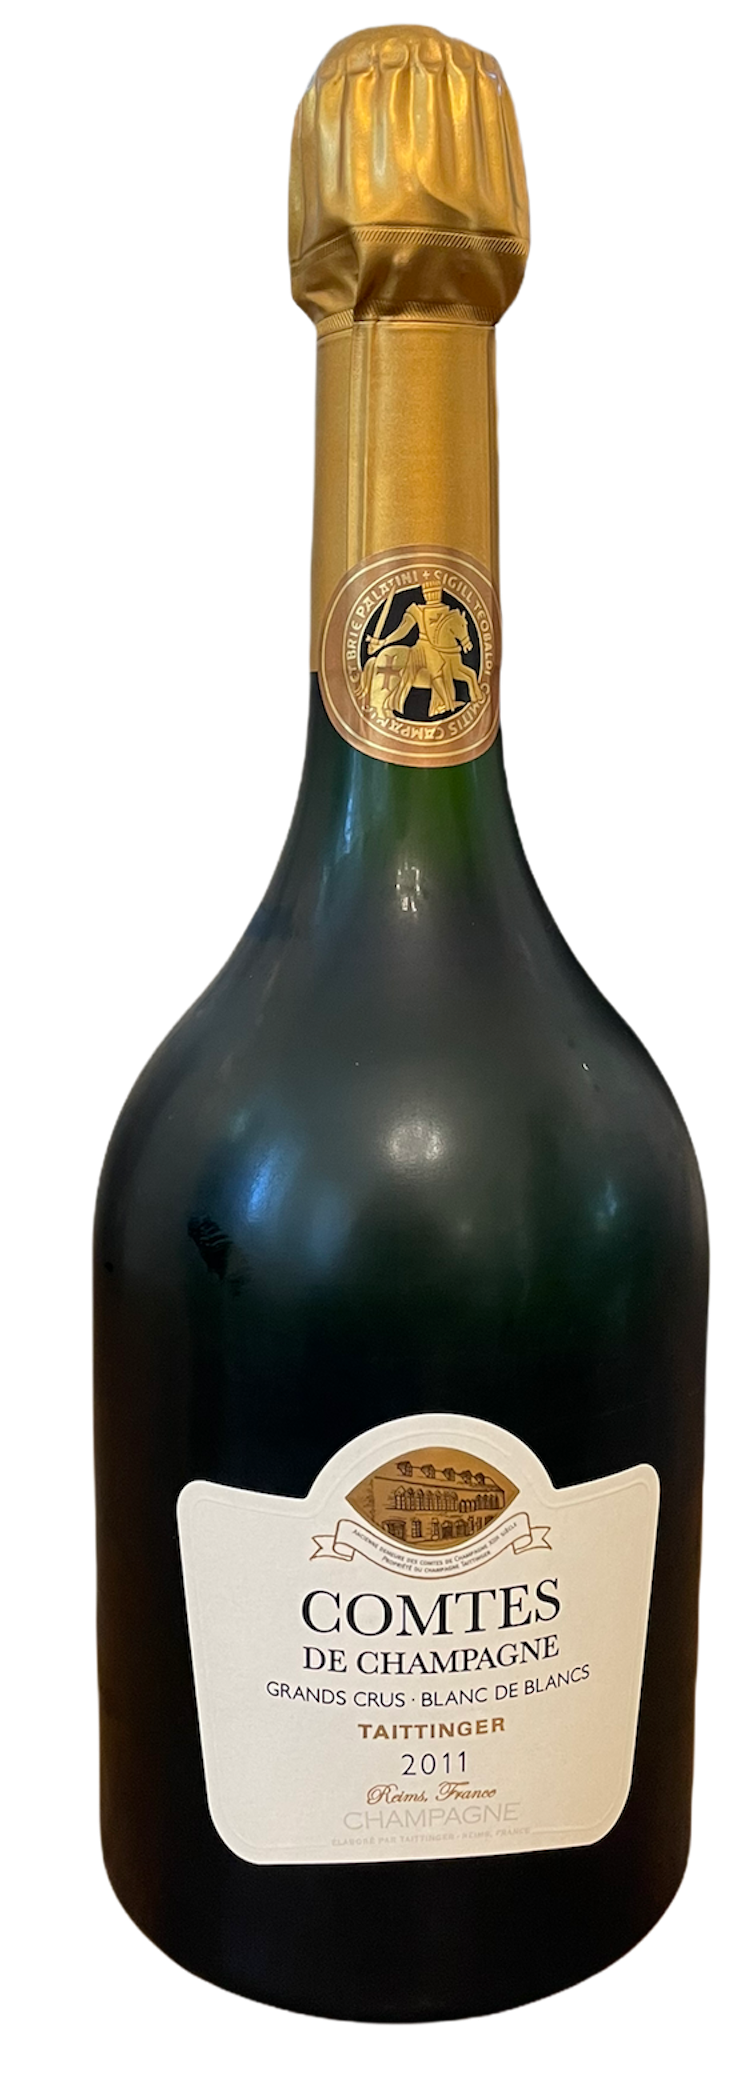 Taittinger Comtes de Champagne Brut Blanc de Blancs 2011